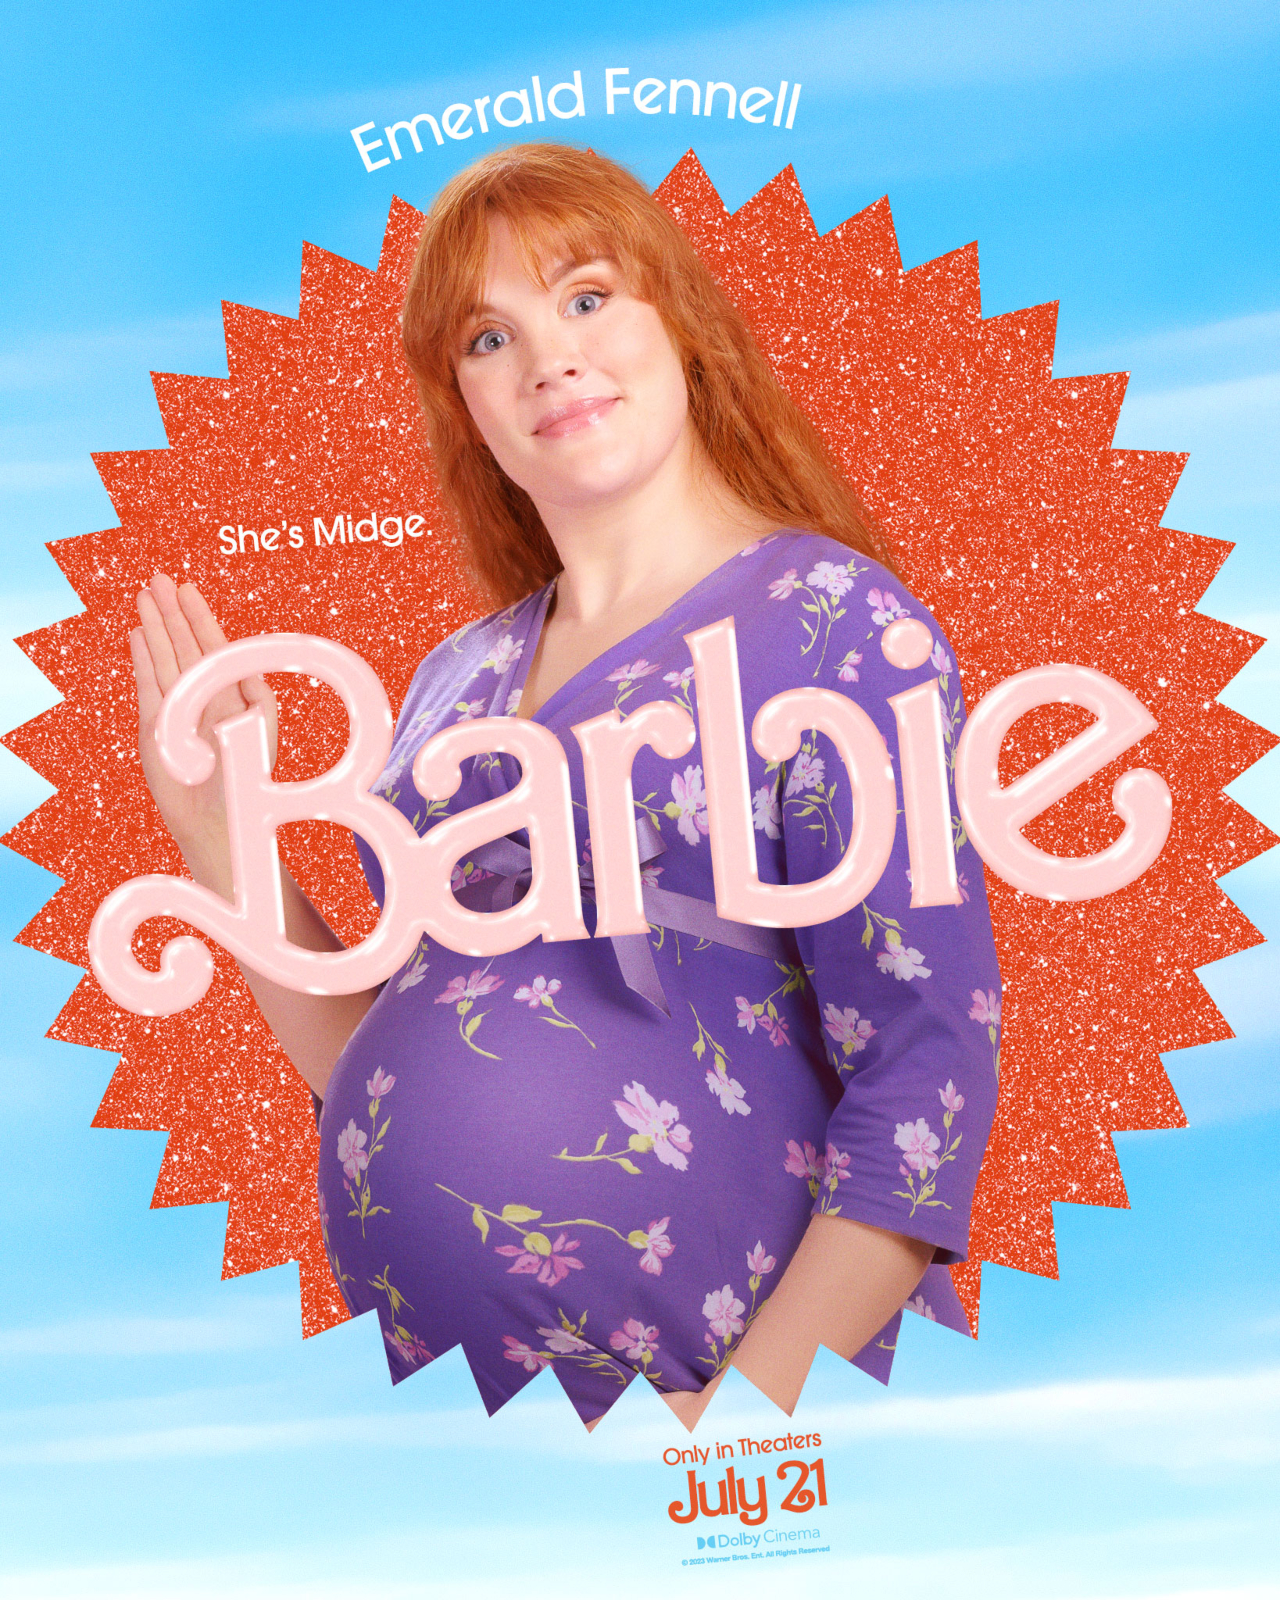 Amiga grávida da Barbie já foi removida das prateleiras após polêmica